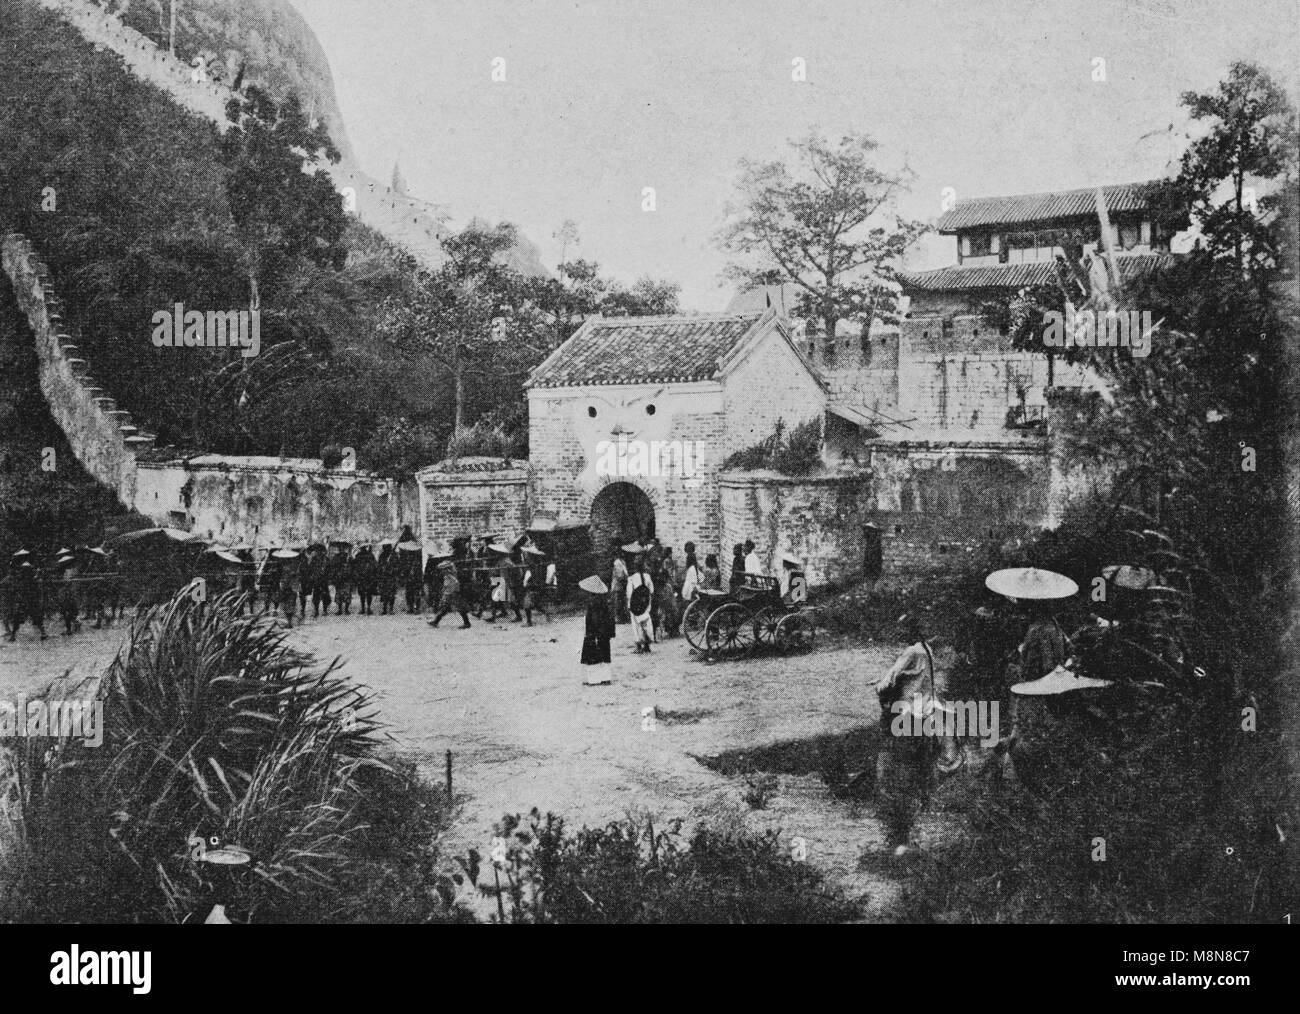 Inauguration du chemin de fer construit par la France entre Hanoi et la Chine en 1900, photo de l'hebdomadaire français journal l'illustration, 22D, septembre 1900 Banque D'Images